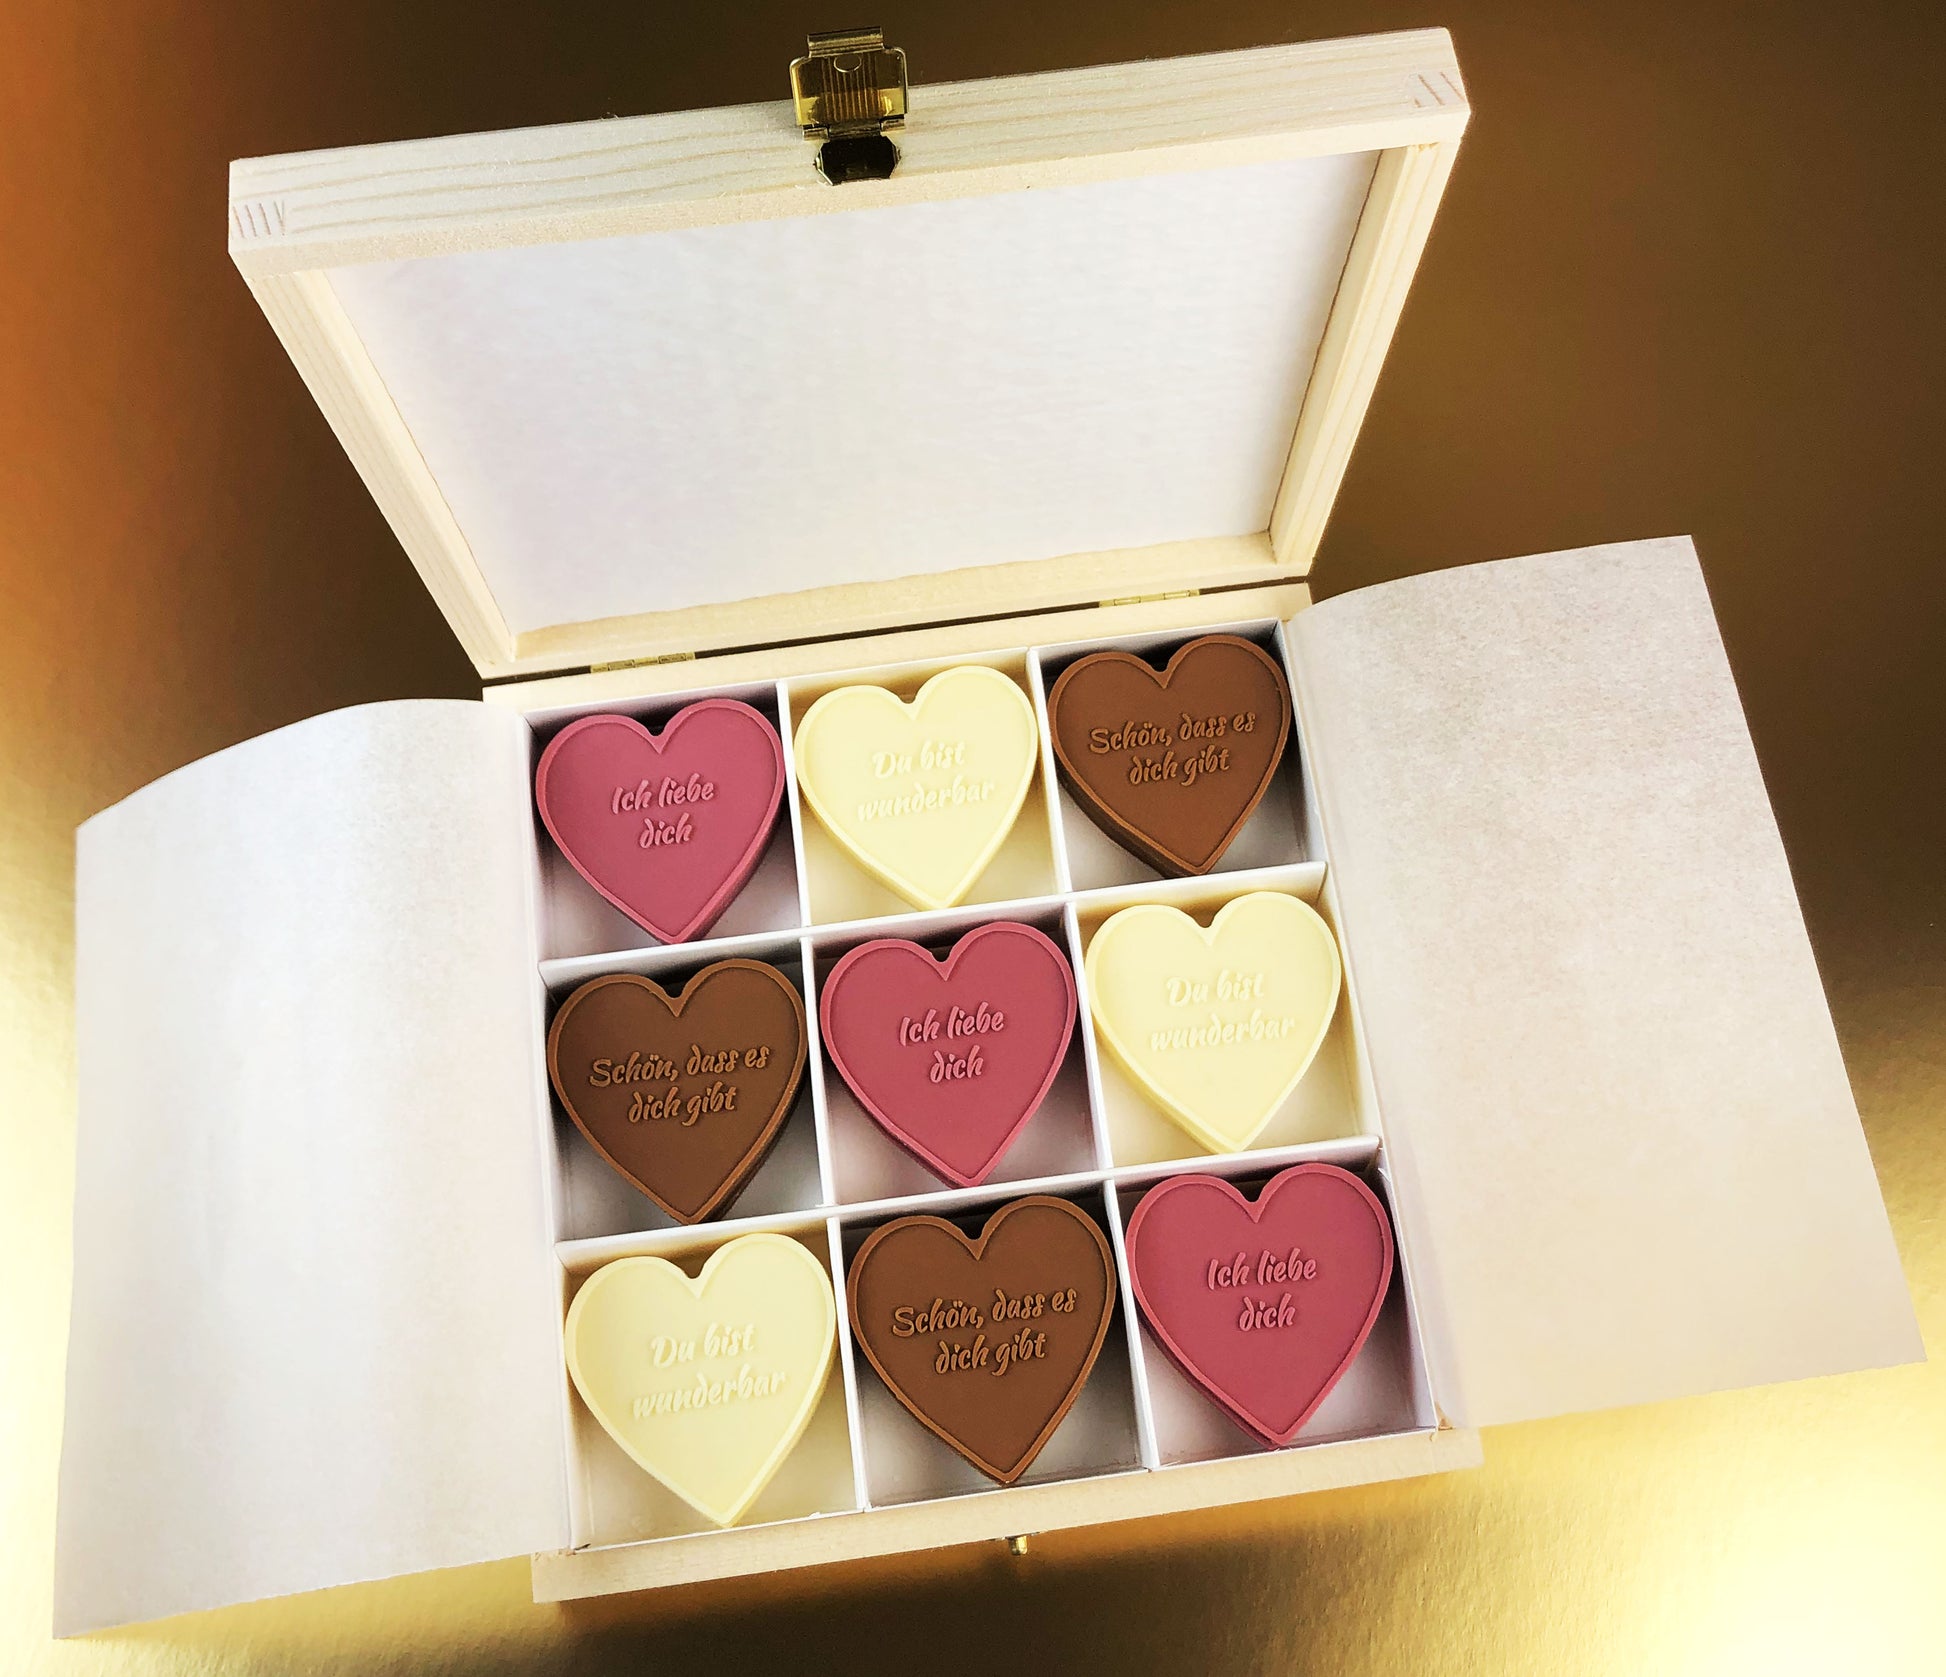 Caja de madera regalo para enamorados en aniversarios y san valentin